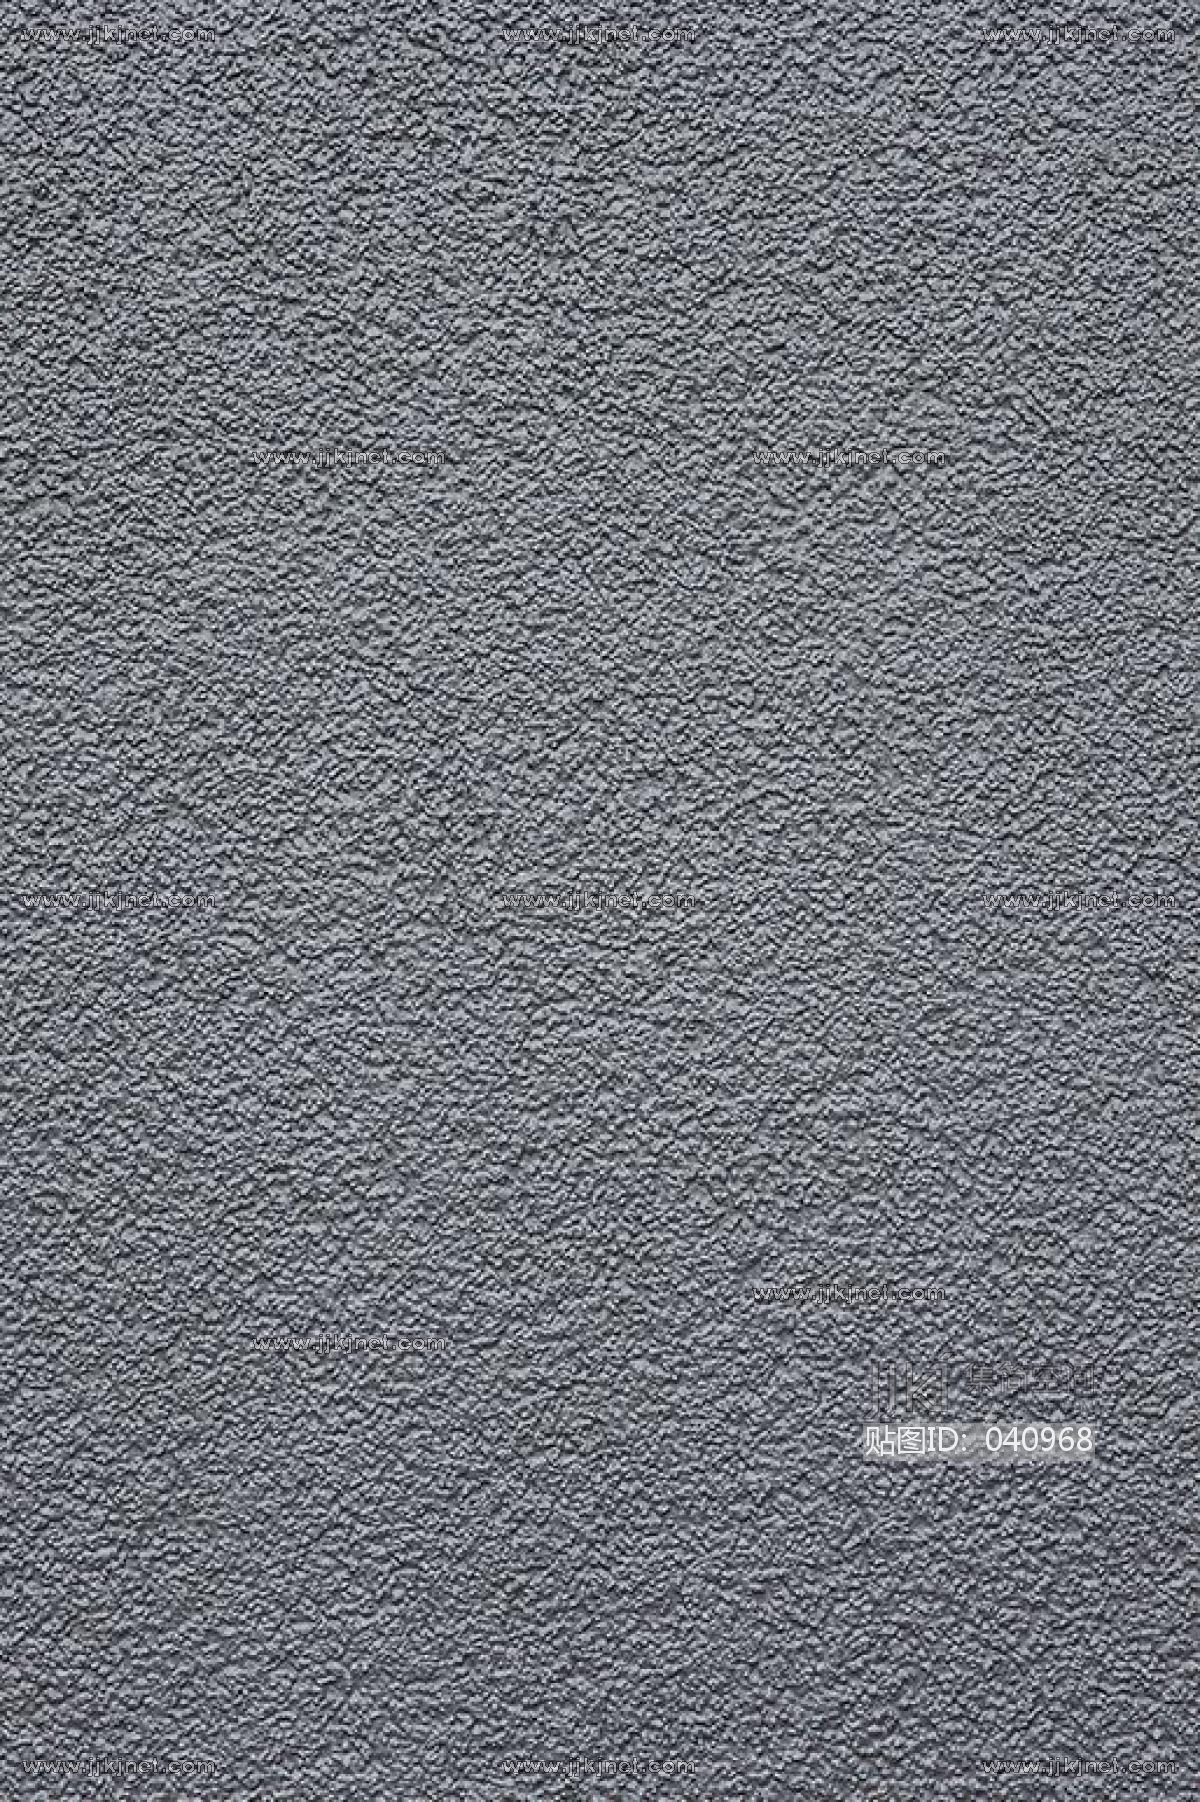 粗糙肌理漆机理墙面硅藻泥 (8)材质贴图下载-【集简空间】「每日更新」